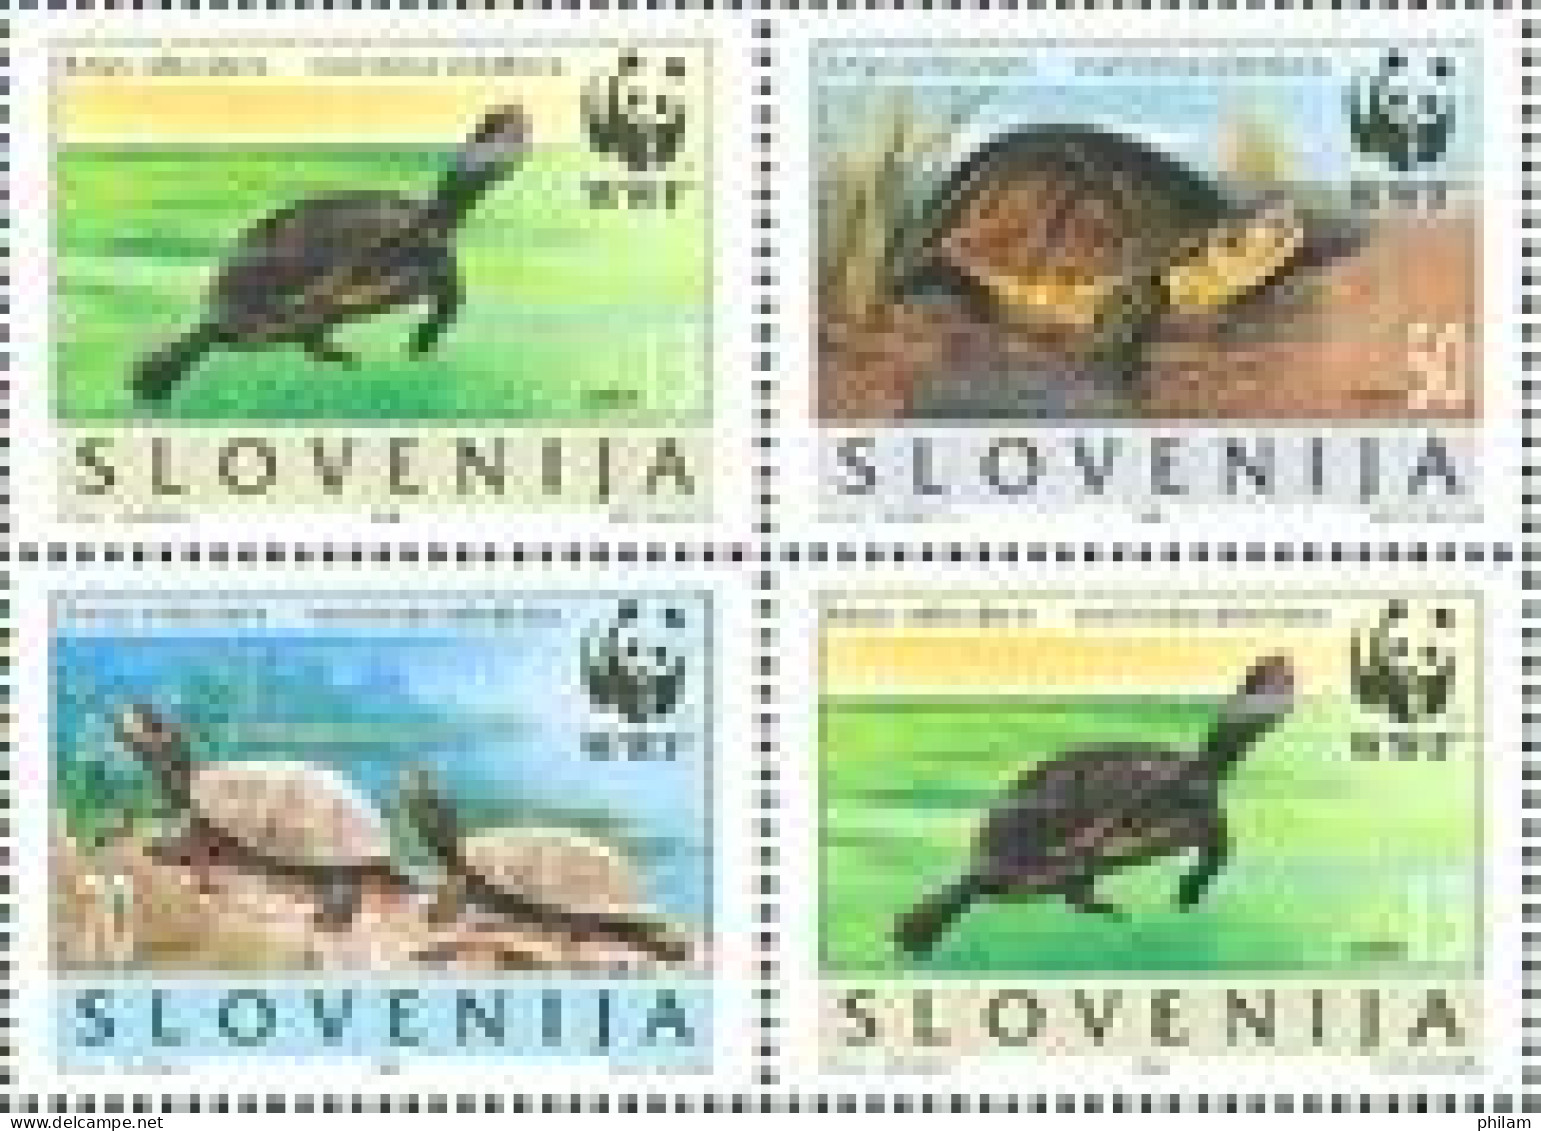 SLOVENIE 1996 - WWF - Tortues Emys Orbicularis - 4 V. - Slovenië